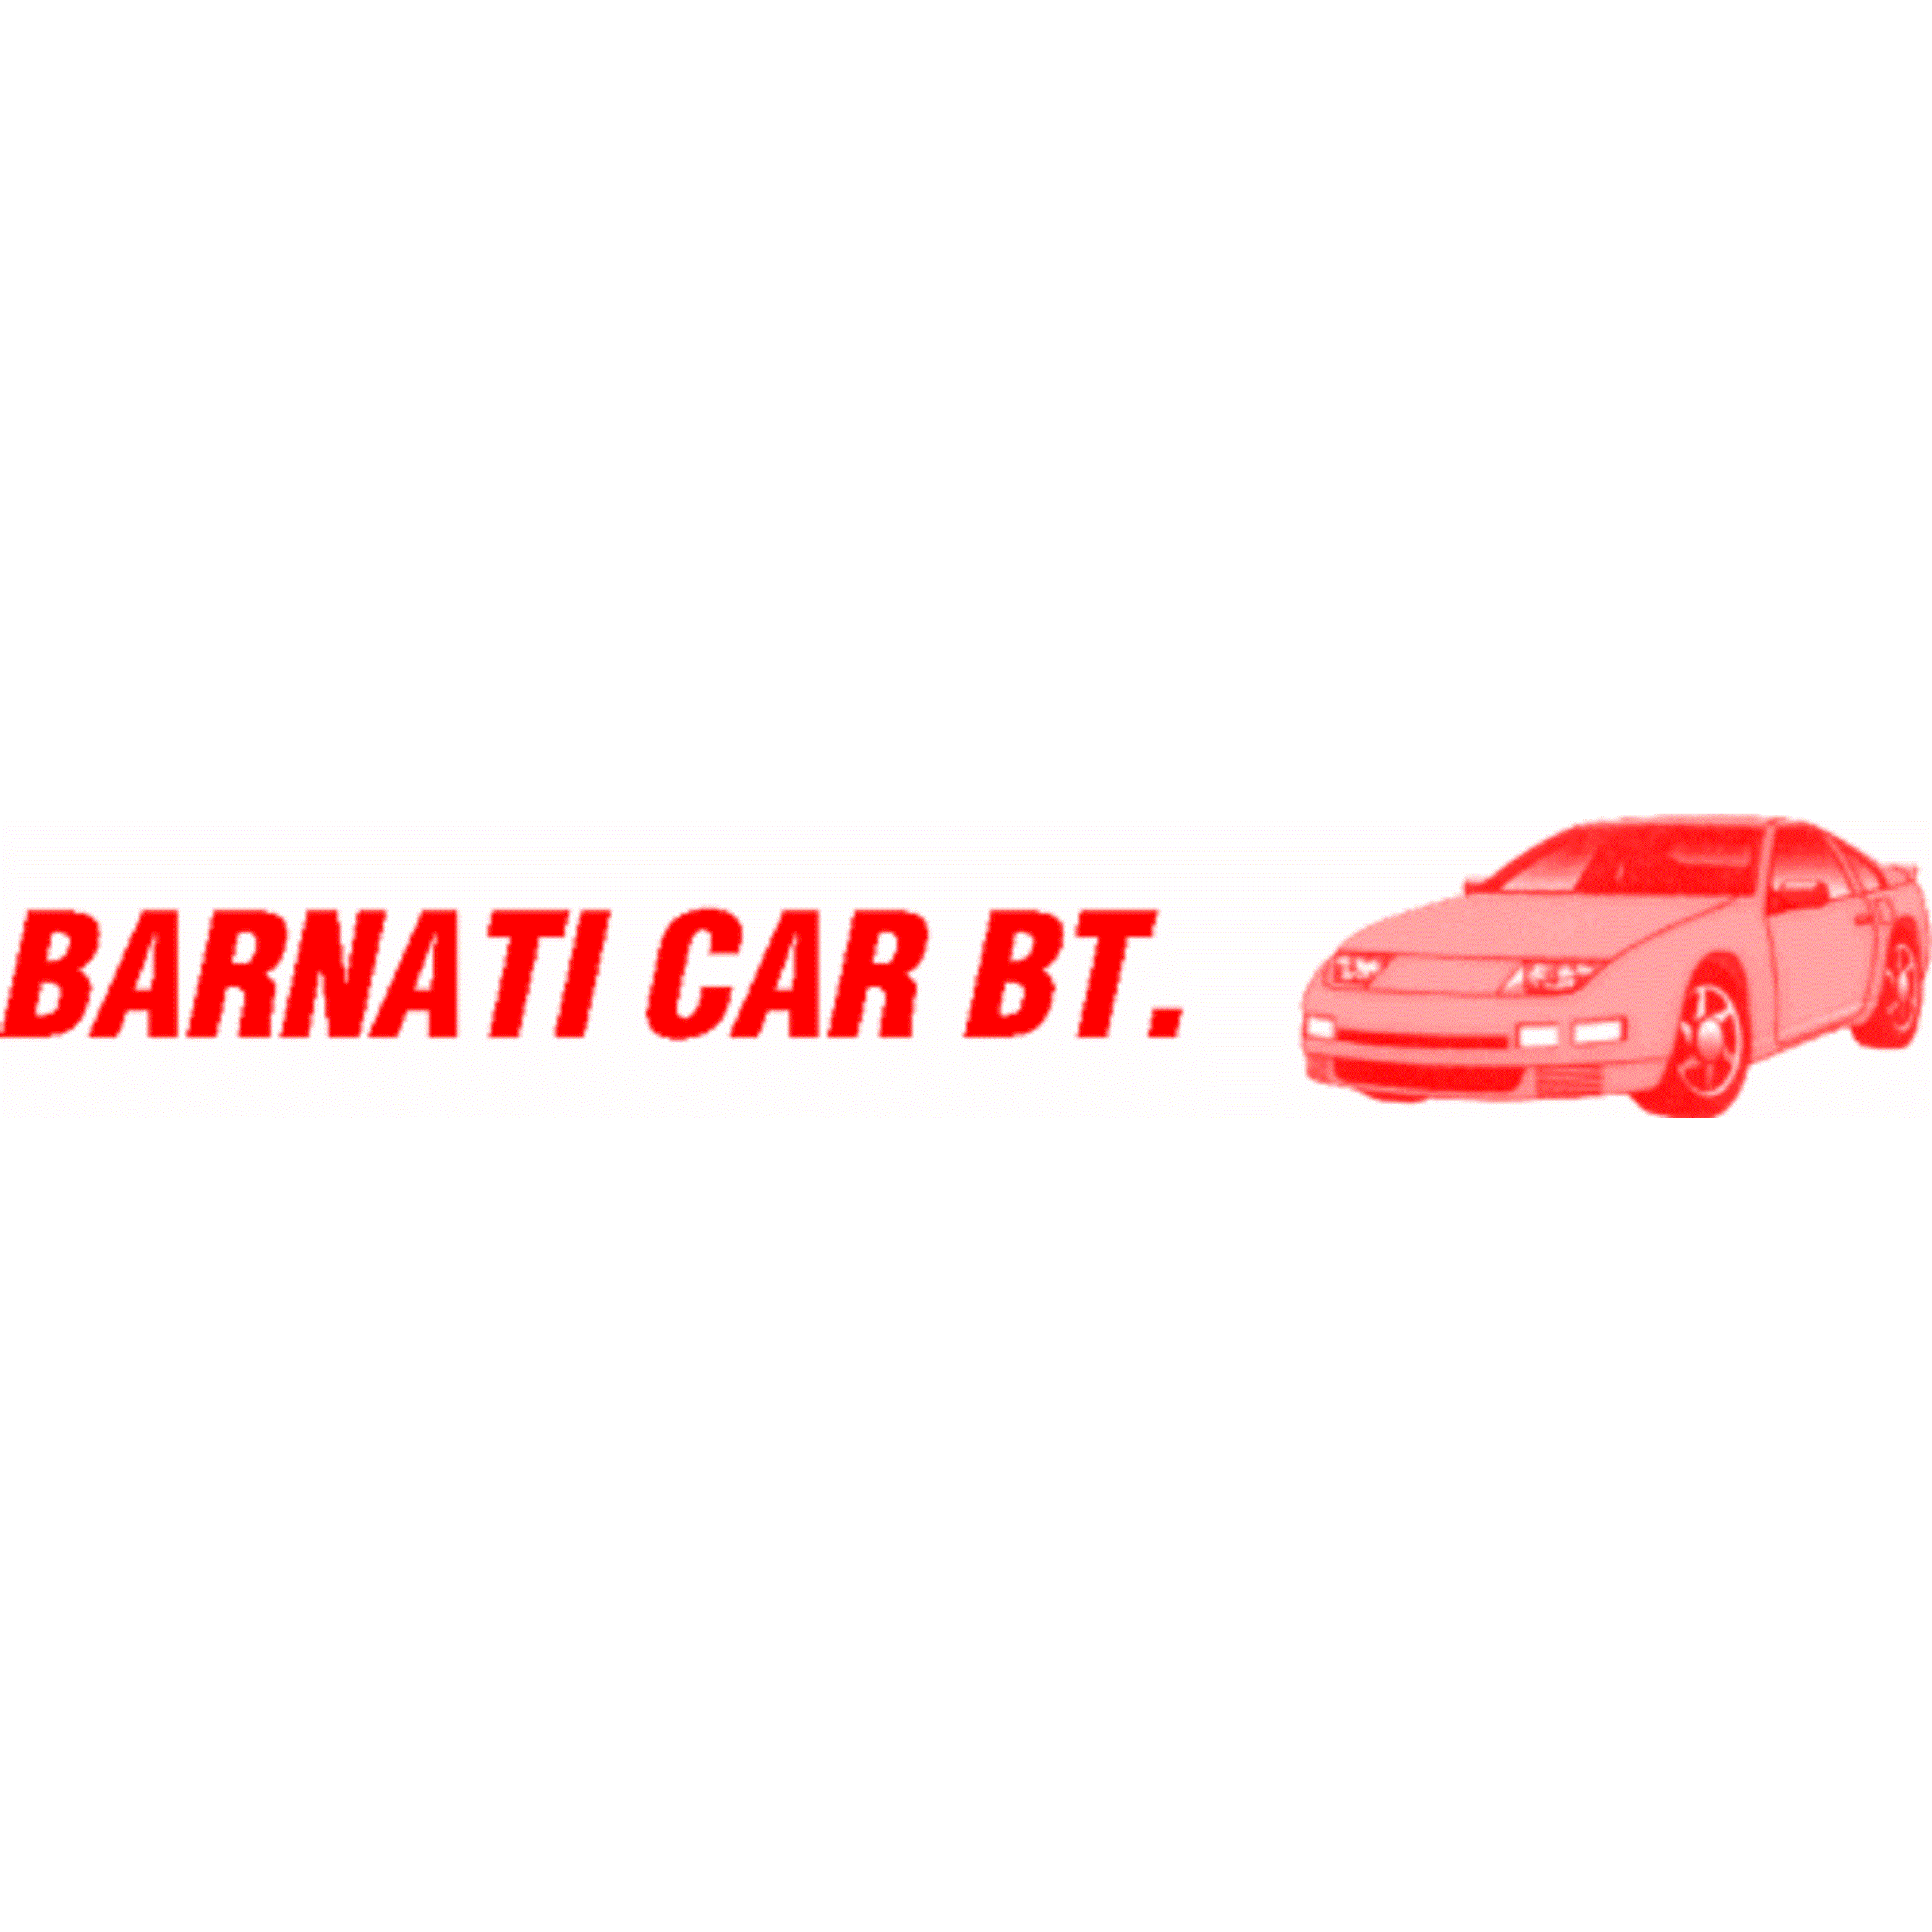 Barnati Car Bt. Logo